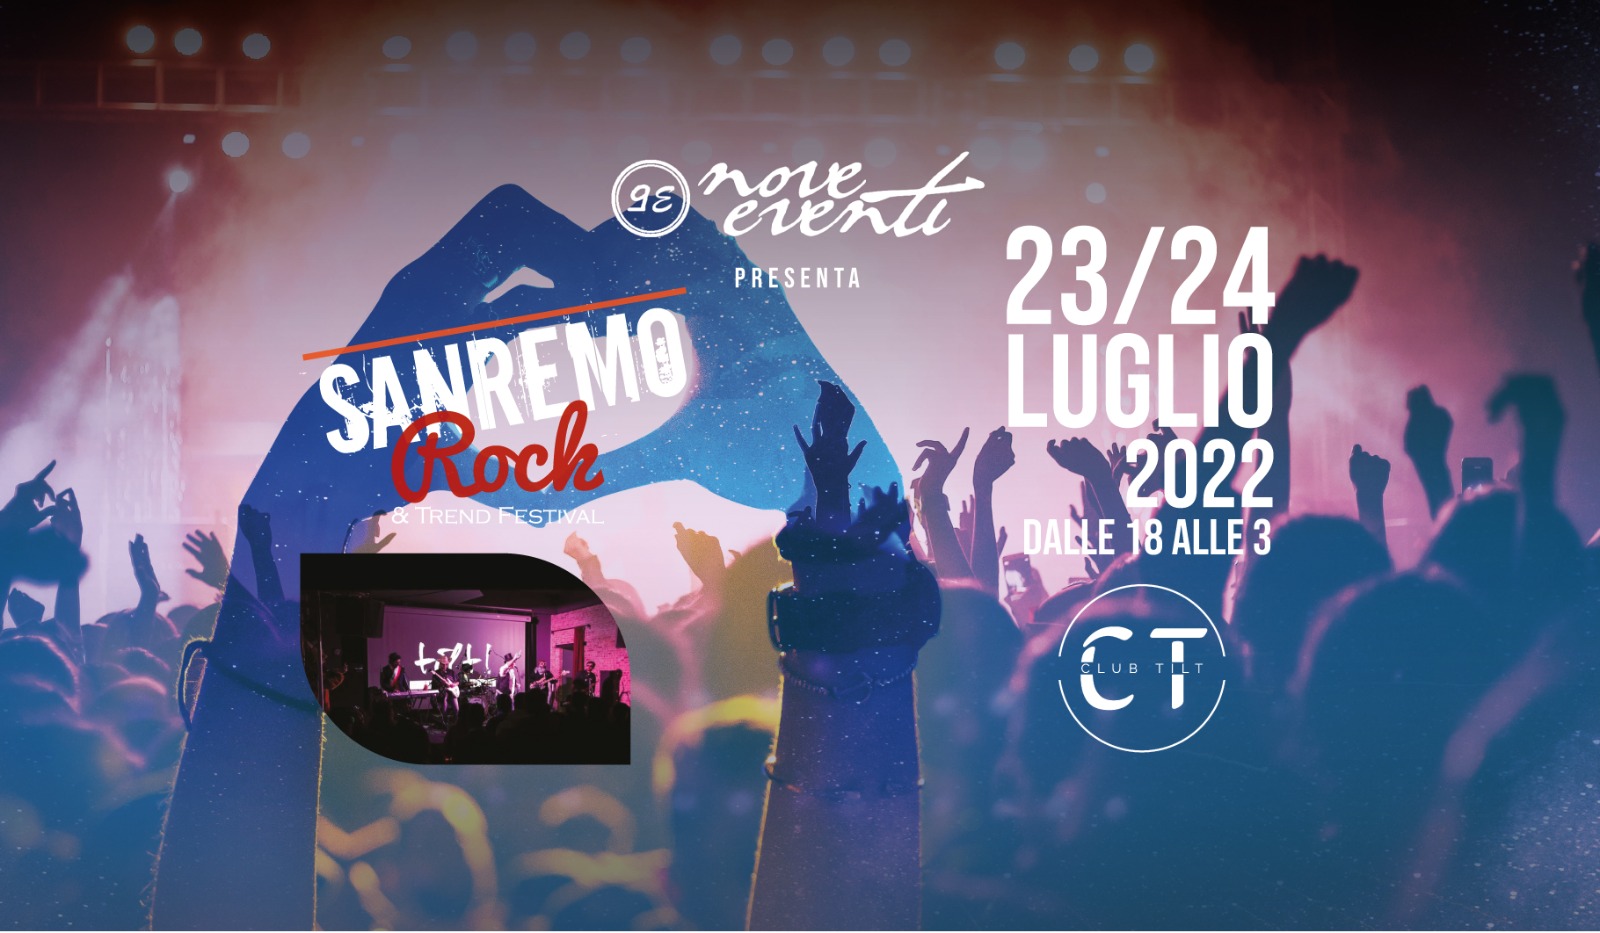 Sanremo Rock Campania le finali al Club Tilt di Avellino il 23 e 24 Luglio 2022